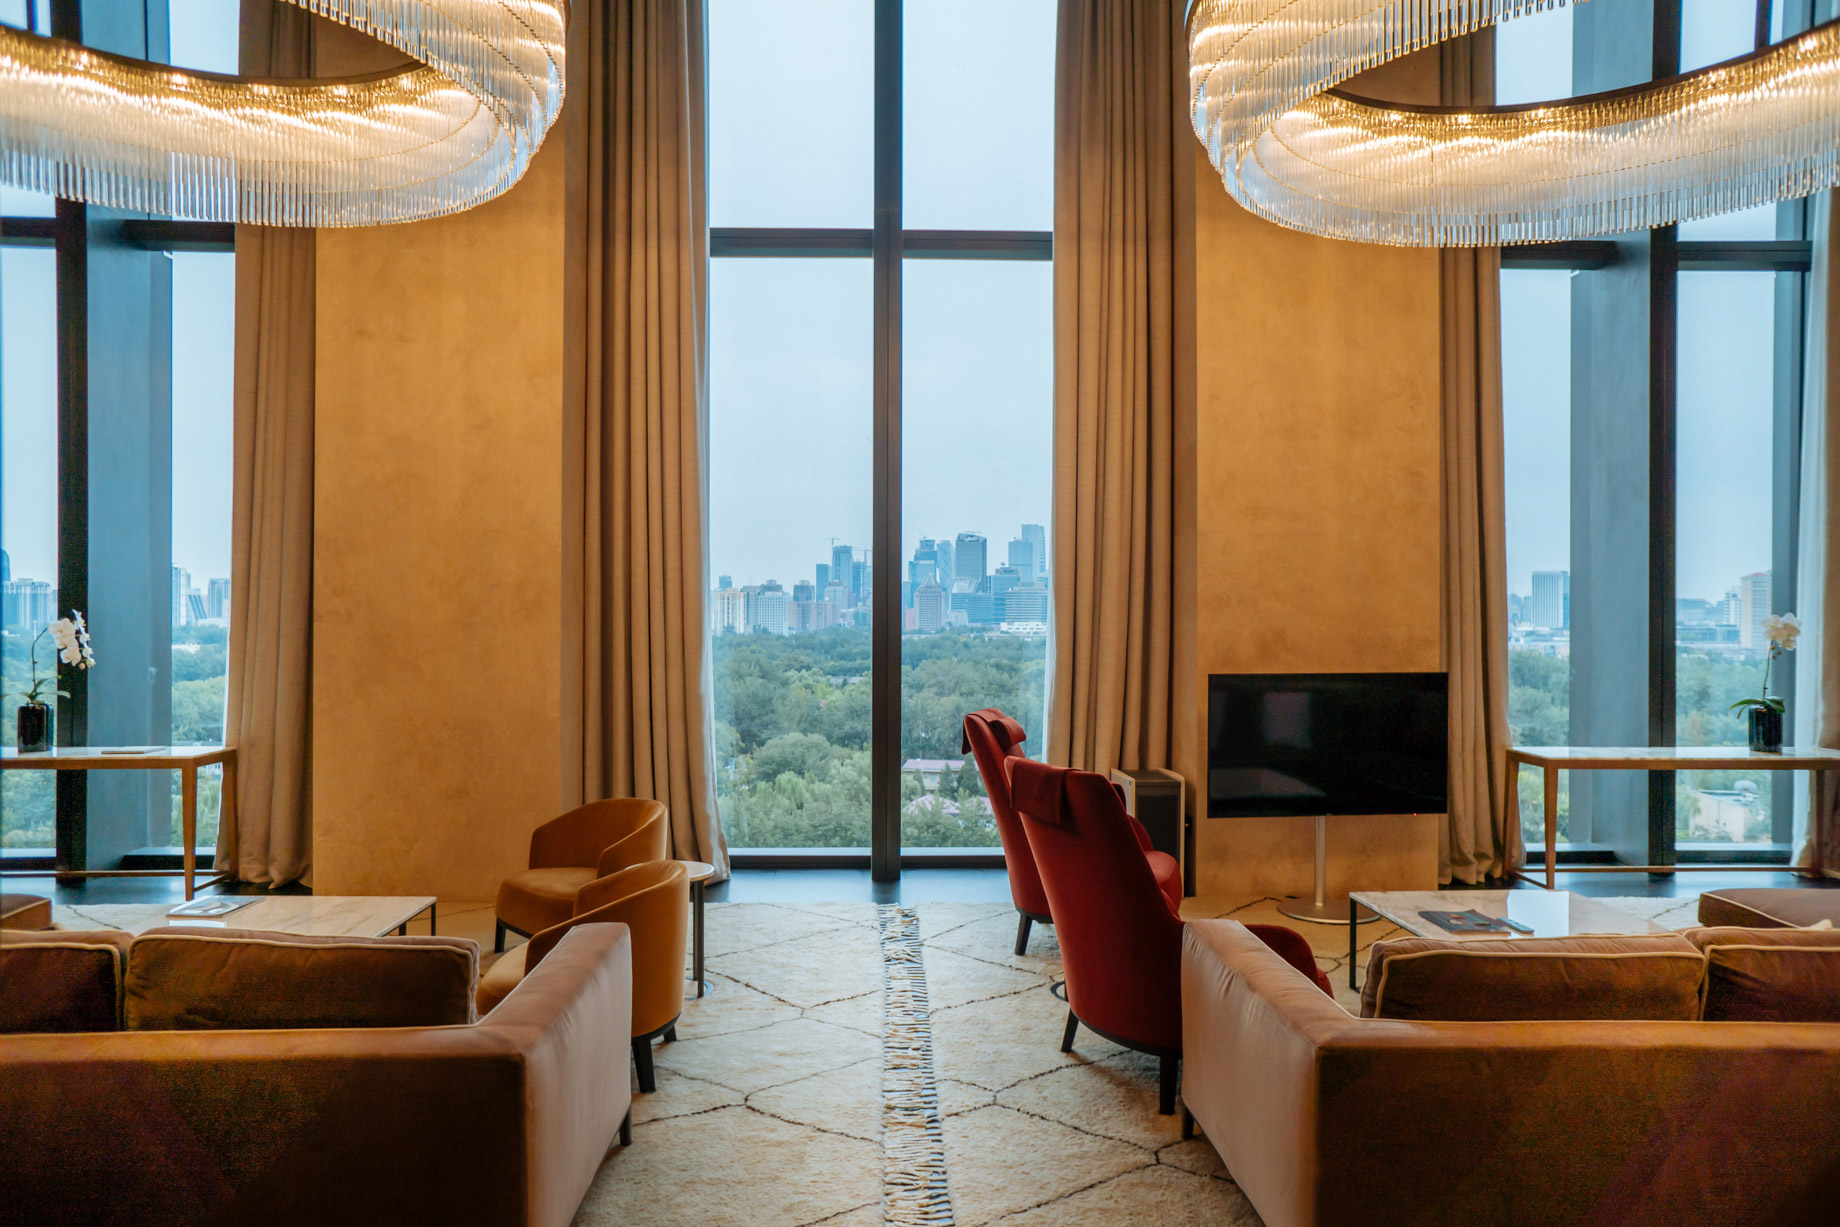 Bvlgari Hotel Beijing – Beijing, China – Bulgari Suite Living Room View